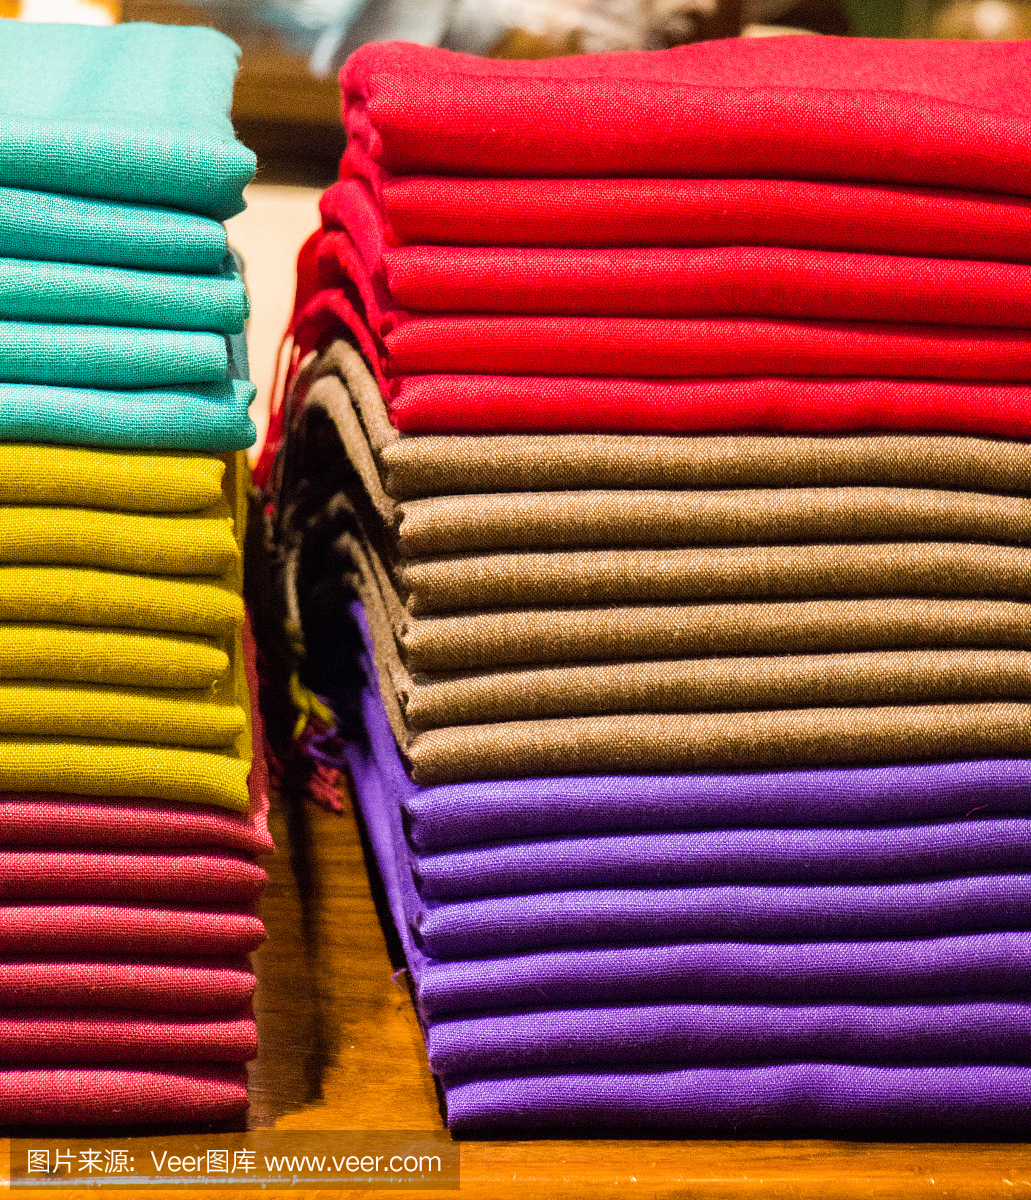 各种颜色和类型的织物的例子